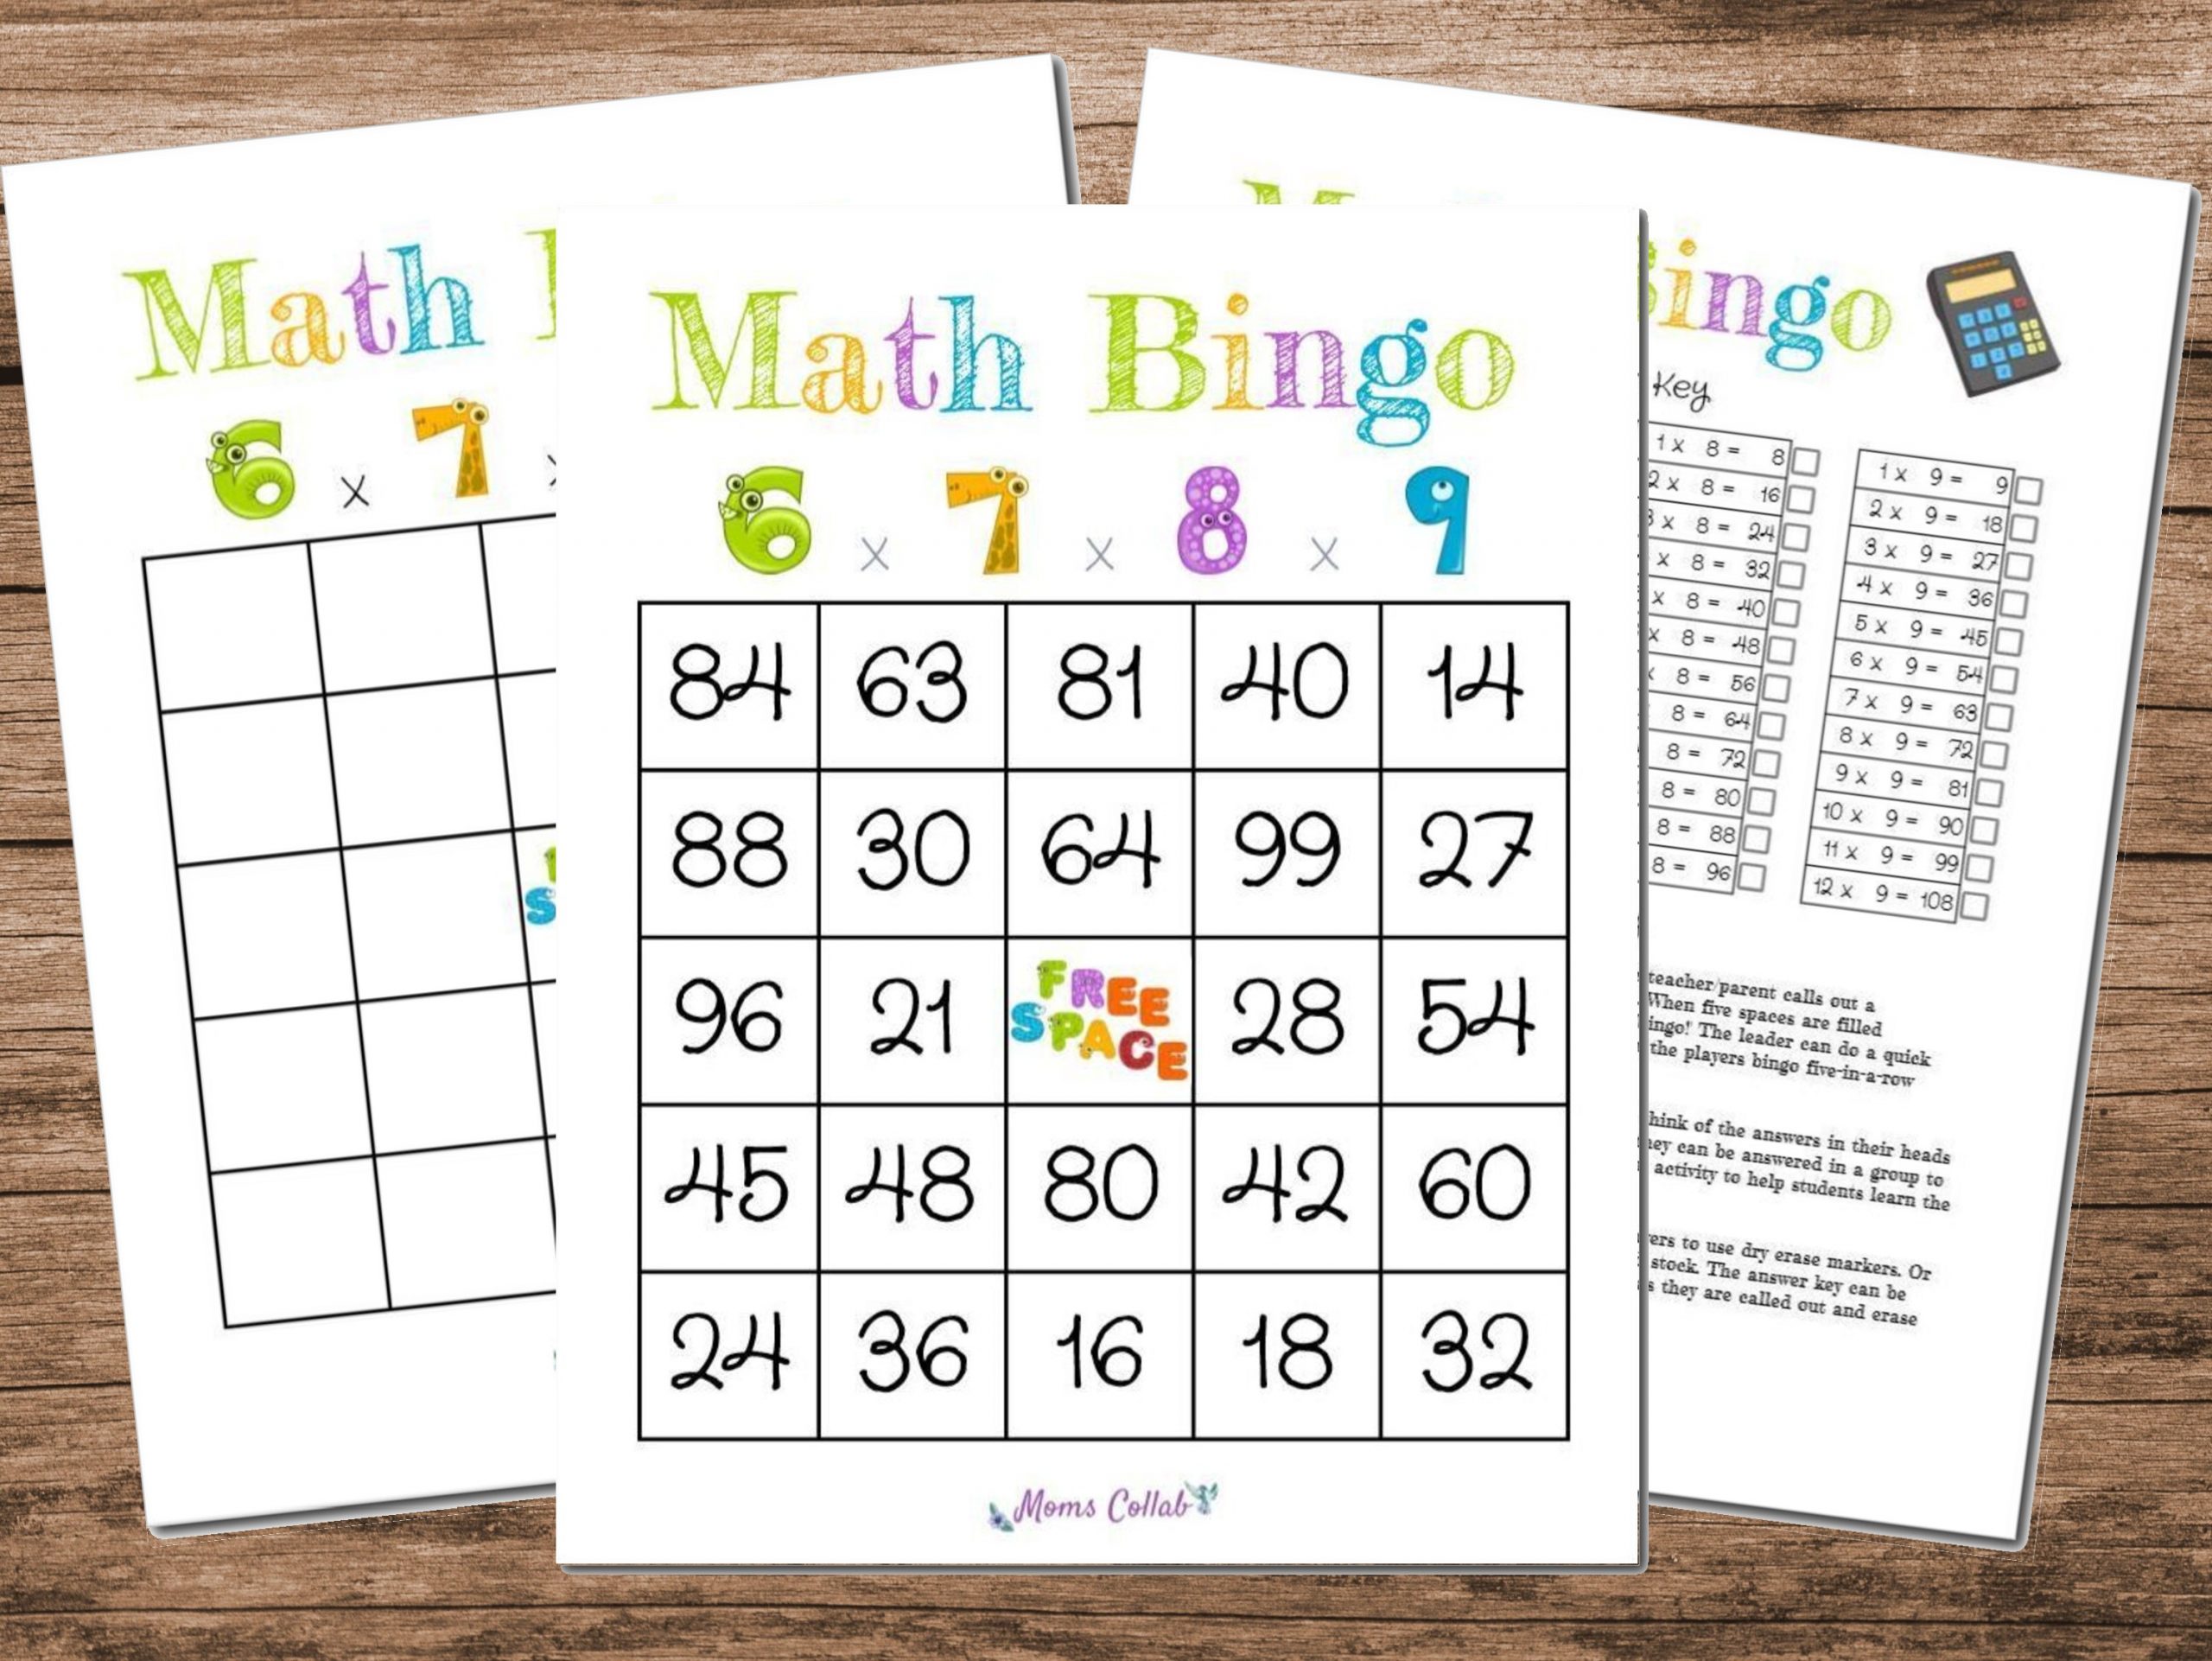  20 įtraukiančių "Bingo" veiklų, skirtų mokymuisi klasėje